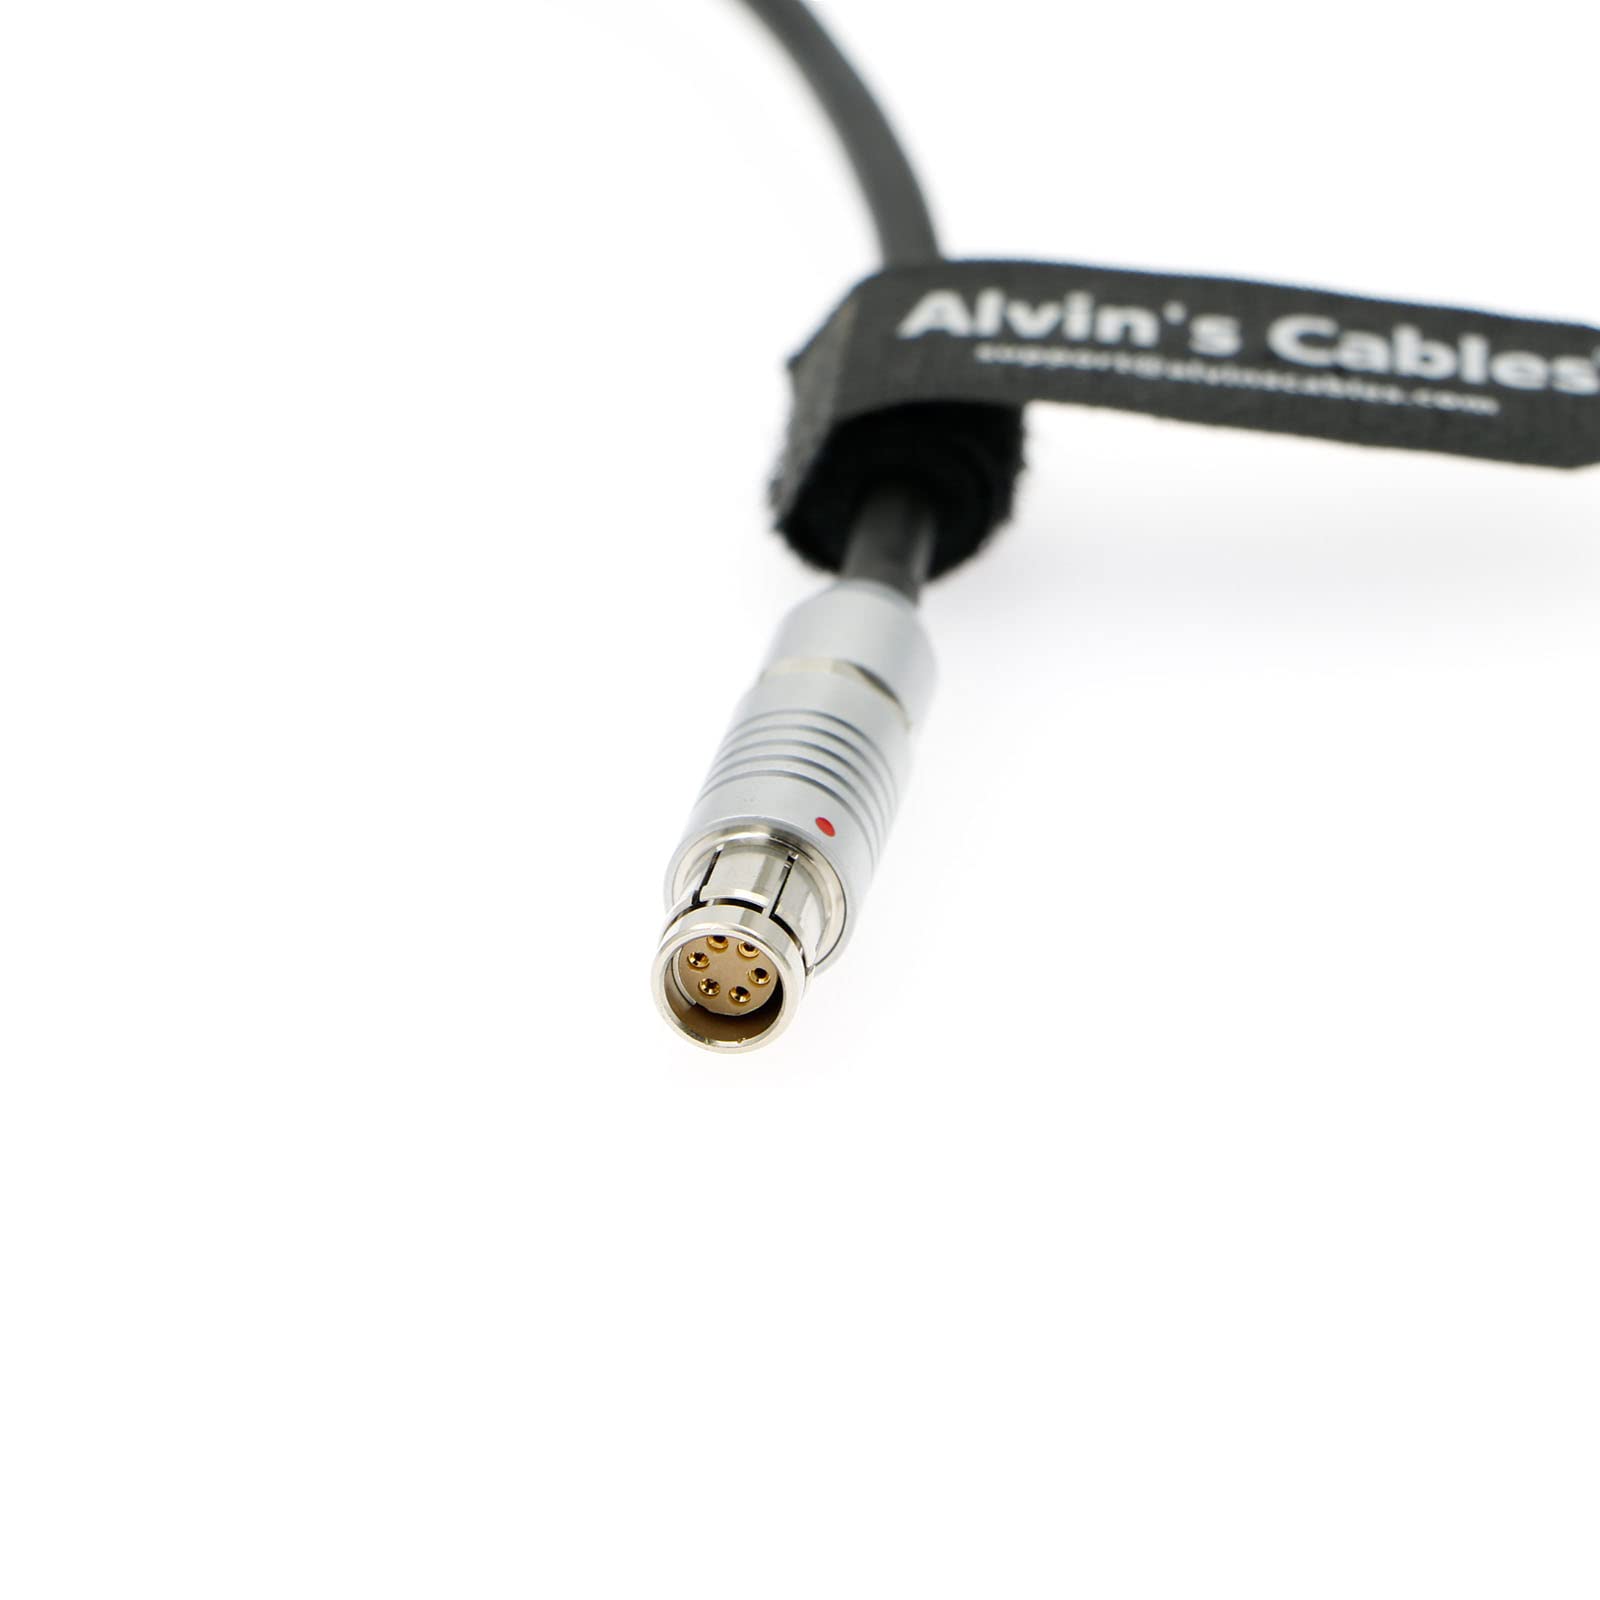 Alvin's Cables Fischer 6 Pin Buchse auf D-Tap Stromkabel für Phantom Miro M320S| VE04K 990| VE04K 590 24 cm | 9,5 Zoll